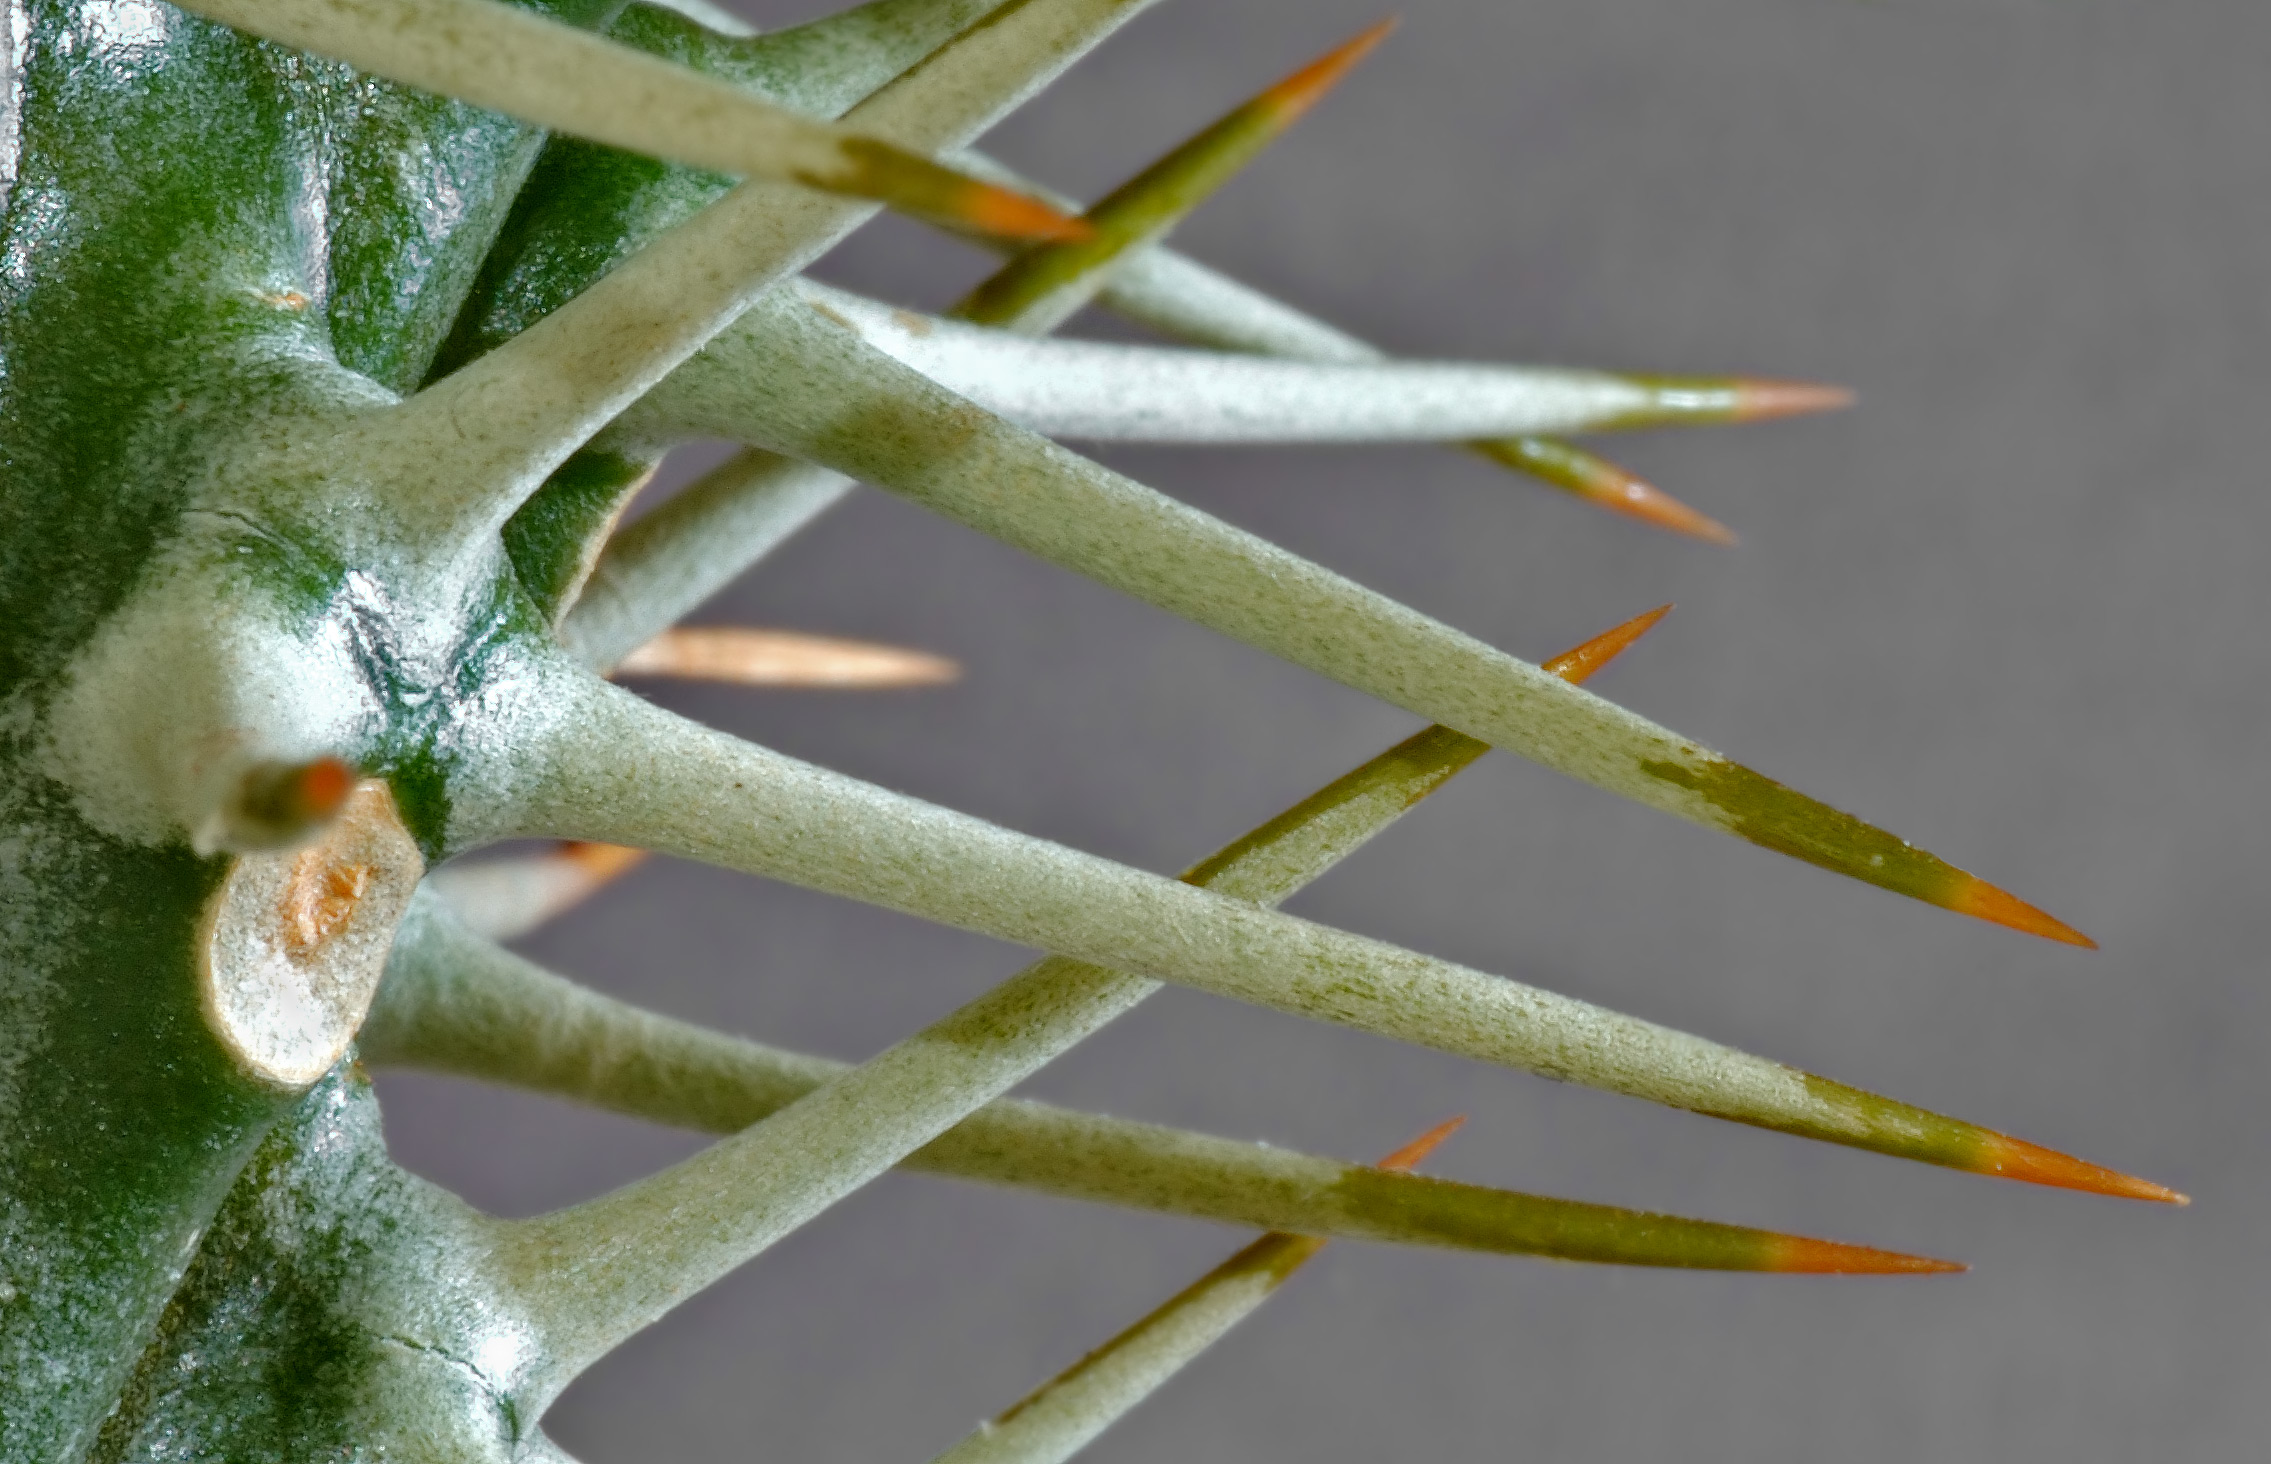 Varias espinas de un cactus.